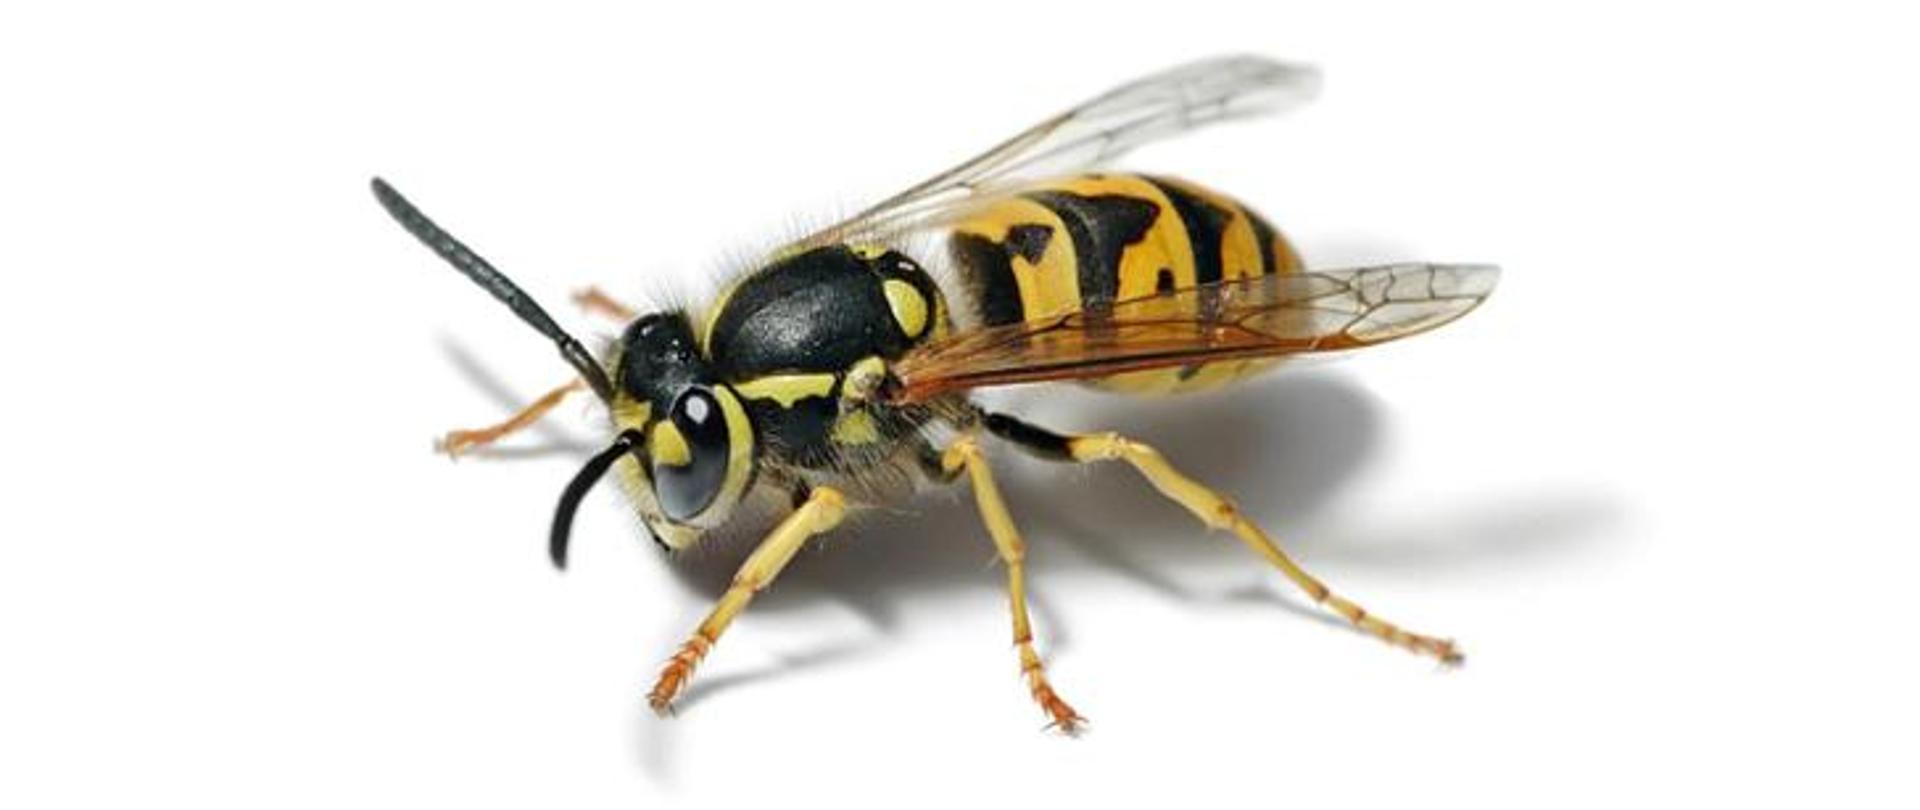 Mając na względzie zapewnienie na terenie całego kraju jednolitych standardów udzielanej pomocy podczas zagrożeń stwarzanych przez owady błonkoskrzydłe (np. osy, szerszenie, pszczoły) opracowane zostały „Zasady postępowania podczas interwencji prowadzonych w związku ze zgłoszeniem wystąpienia zagrożeń od rojów lub gniazd owadów błonkoskrzydłych”.
Straż pożarna podejmuje wszelkie niezbędne działania zmierzające do usunięcia roju lub gniazda owadów błonkoskrzydłych z miejsc, w których stwarzają one bezpośrednie zagrożenie dla życia lub zdrowia ludzkiego, w szczególności dotyczy to obecności osób o ograniczonej zdolności poruszania się, czy z budynków użyteczności publicznej oraz placówek oświatowych.
W pozostałych przypadkach, przypominamy, że zgodnie z art. 61 ustawy „Prawo budowlane”, zapewnienie bezpiecznego użytkowania obiektu należy do właściciela lub zarządcy obiektu.
Zwracamy się z prośbą o zrozumienie i nie przekazywanie nieprawdziwych informacji o zagrożeniu życia lub zdrowia, jeśli takowe zagrożenie nie występuje.
Wyjazd zastępu w nieuzasadnionym przypadku spowoduje zgodnie z ww. „Zasadami…”: zabezpieczenie terenu działań, ewakuację osób z obiektu i przekazanie terenu działań z zaleceniem, zapewnienia bezpiecznego użytkowania obiektu jego właścicielowi lub zarządcy, zgodnie z „Prawem budowlanym”.
W sytuacji bezpośredniego zagrożenia zdrowia lub życia, straż pożarna podejmuje interwencje, jednak w innych przypadkach, właściwymi instytucjami do likwidacji gniazd są firmy dezynsekcyjne.
Zdarzenia związane z występowaniem owadów błonkoskrzydłych w większości przypadków nie są zdarzeniami nagłymi i odpowiednio administrowanie obiektem, skutecznie uniemożliwia zagnieżdżenie się w nim owadów.
Pamiętajmy również, że każdy z nas może potrzebować pomocy, a nieuzasadniony wyjazd strażaków w miejsce, gdzie nie ma konieczności ich interwencji, powodować może opóźnienia w dotarciu do zdarzeń, gdzie zagrożone jest życie lub zdrowie ludzi.
W związku z powyższym, zwracamy się z apelem o większą rozwagę przy zgłaszaniu potrzeby naszej interwencji.